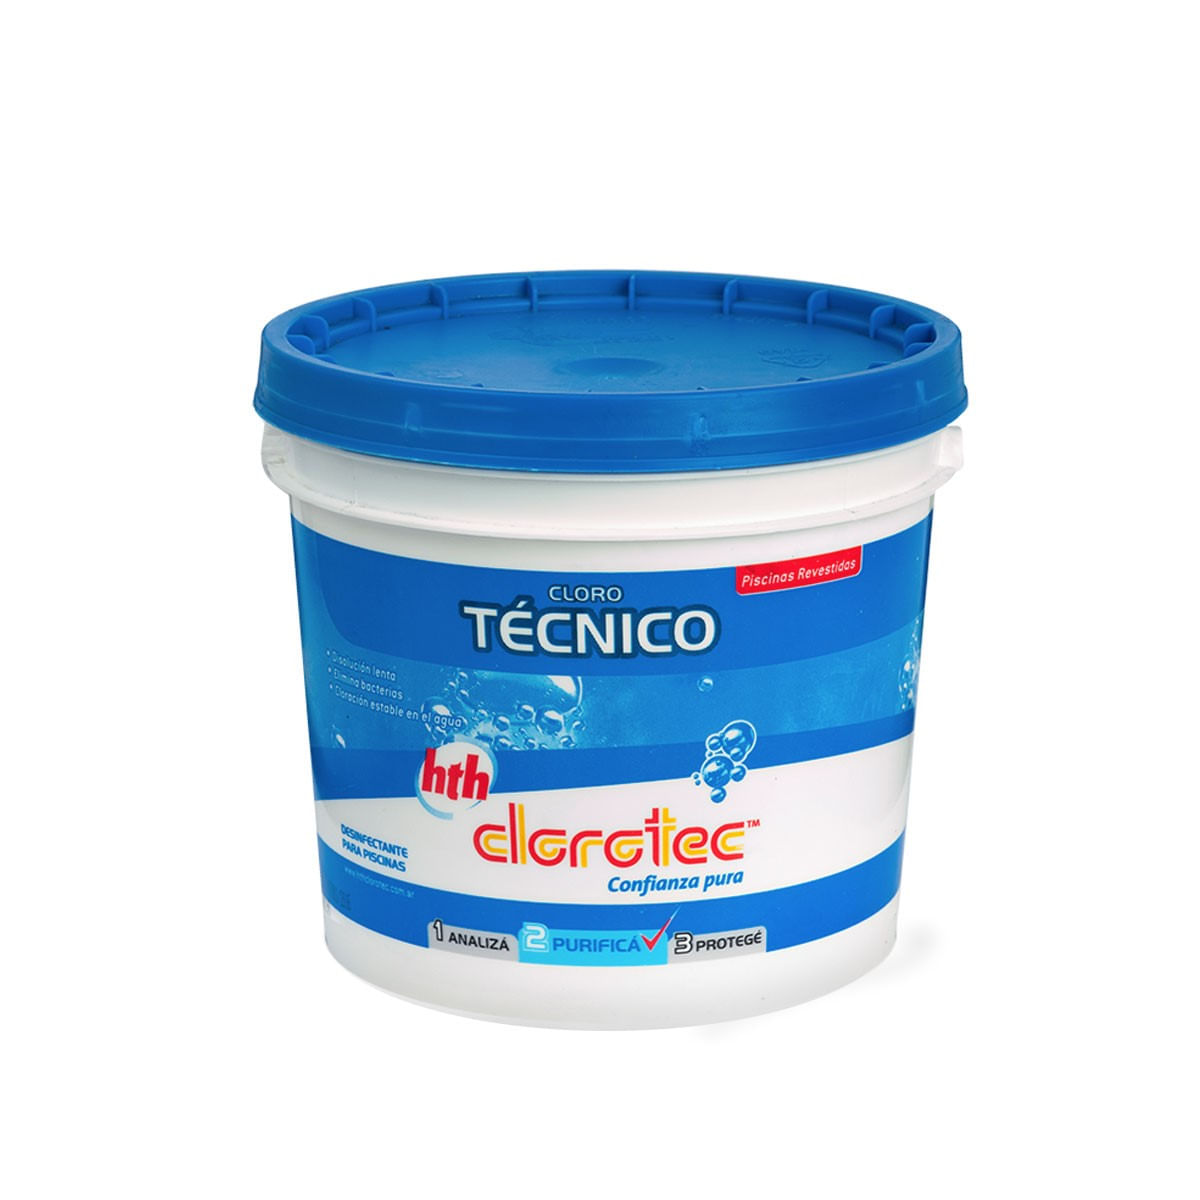 cloro-tecnico-clorotec-5-kg